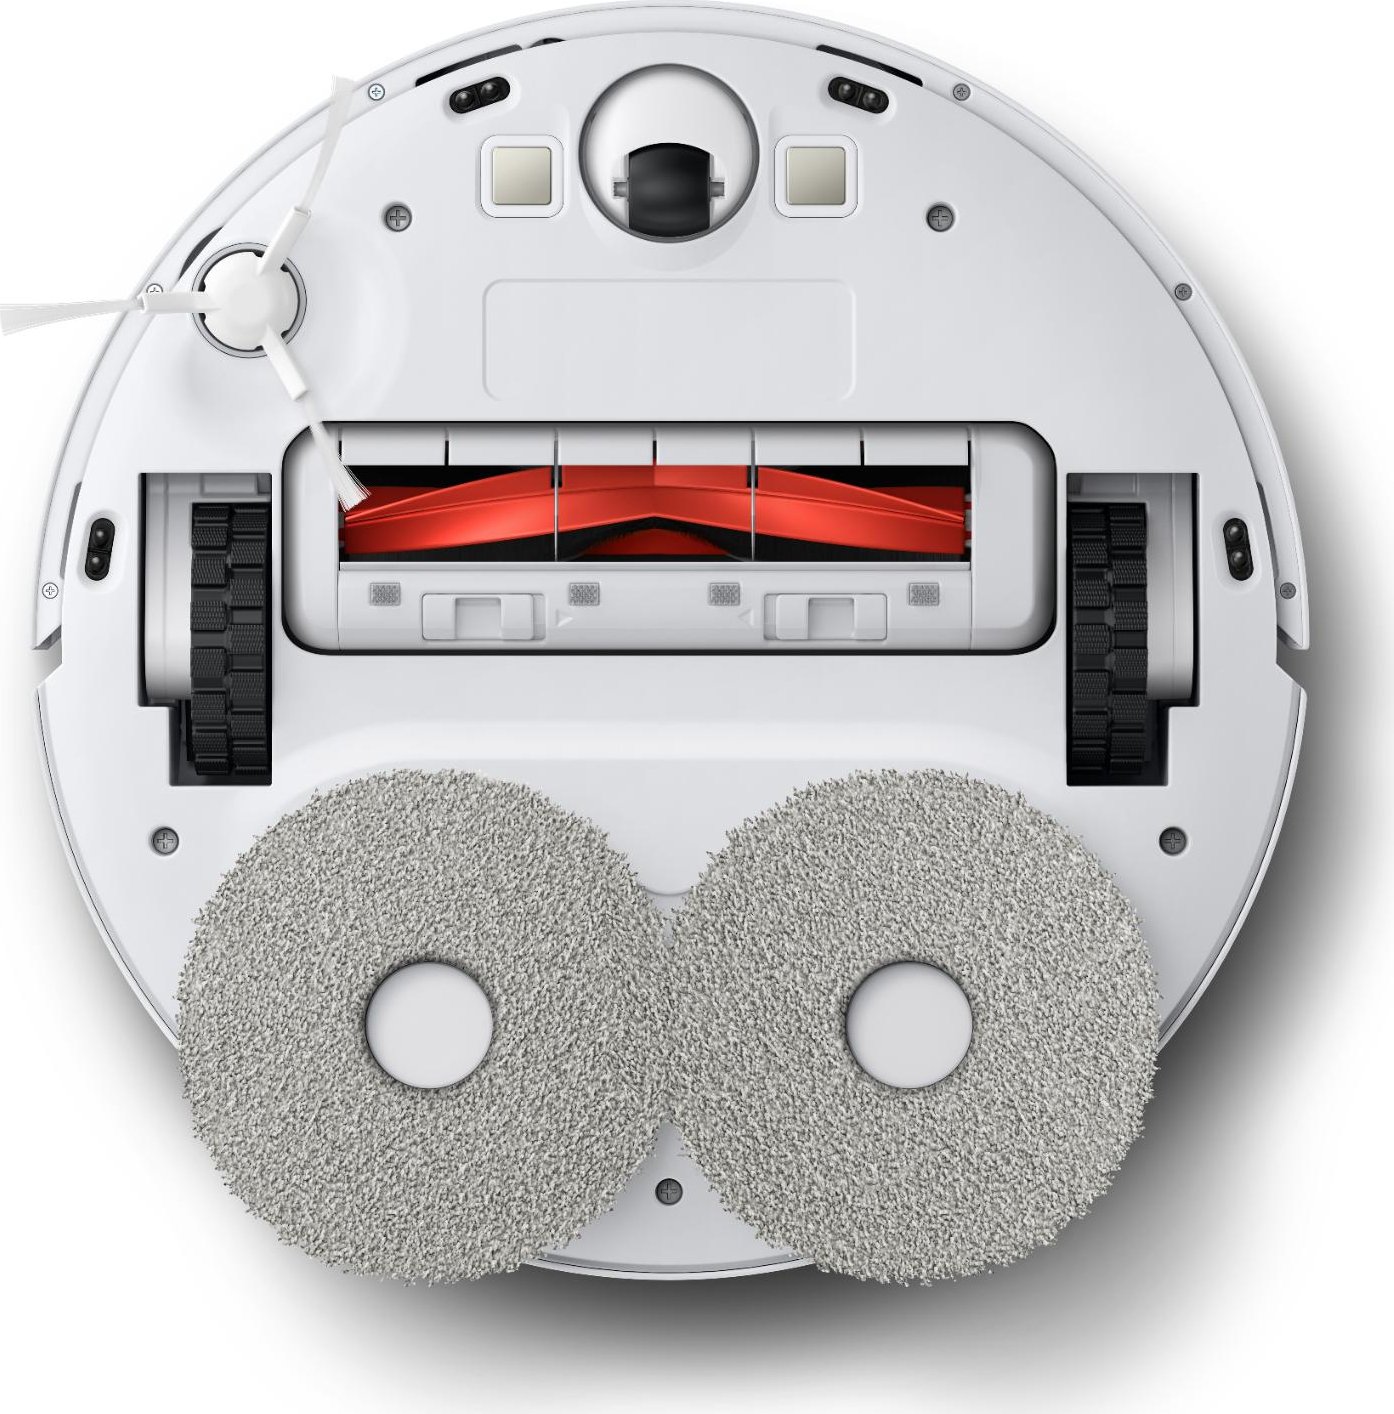 Robot Aspirador Cecotec Conga 2290 Ultimate (05696) - Innova Informática :  Aspiradoras y limpieza